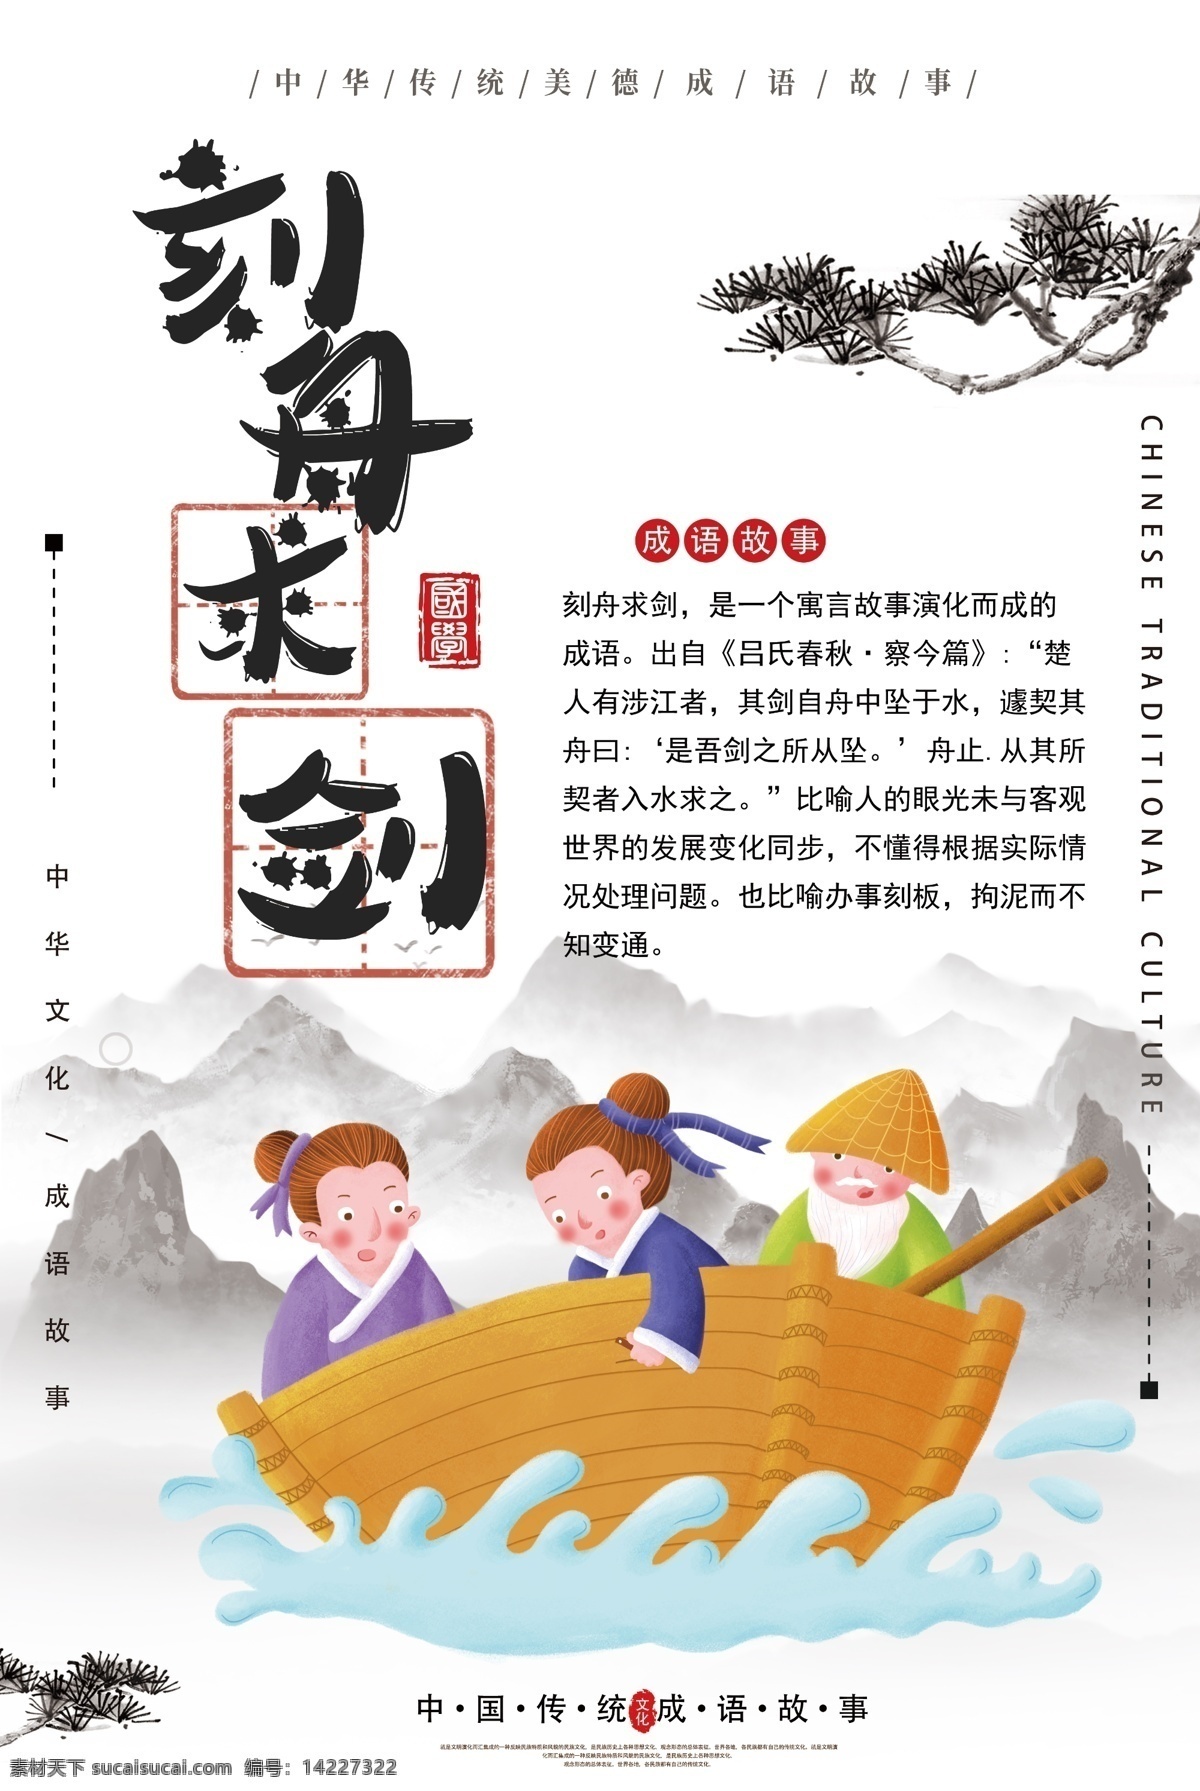 刻舟求剑 成语 海报 寓言 求真 传统 成语故事 中华文化 教育 教学 插画 典故 儿童读物 成语海报